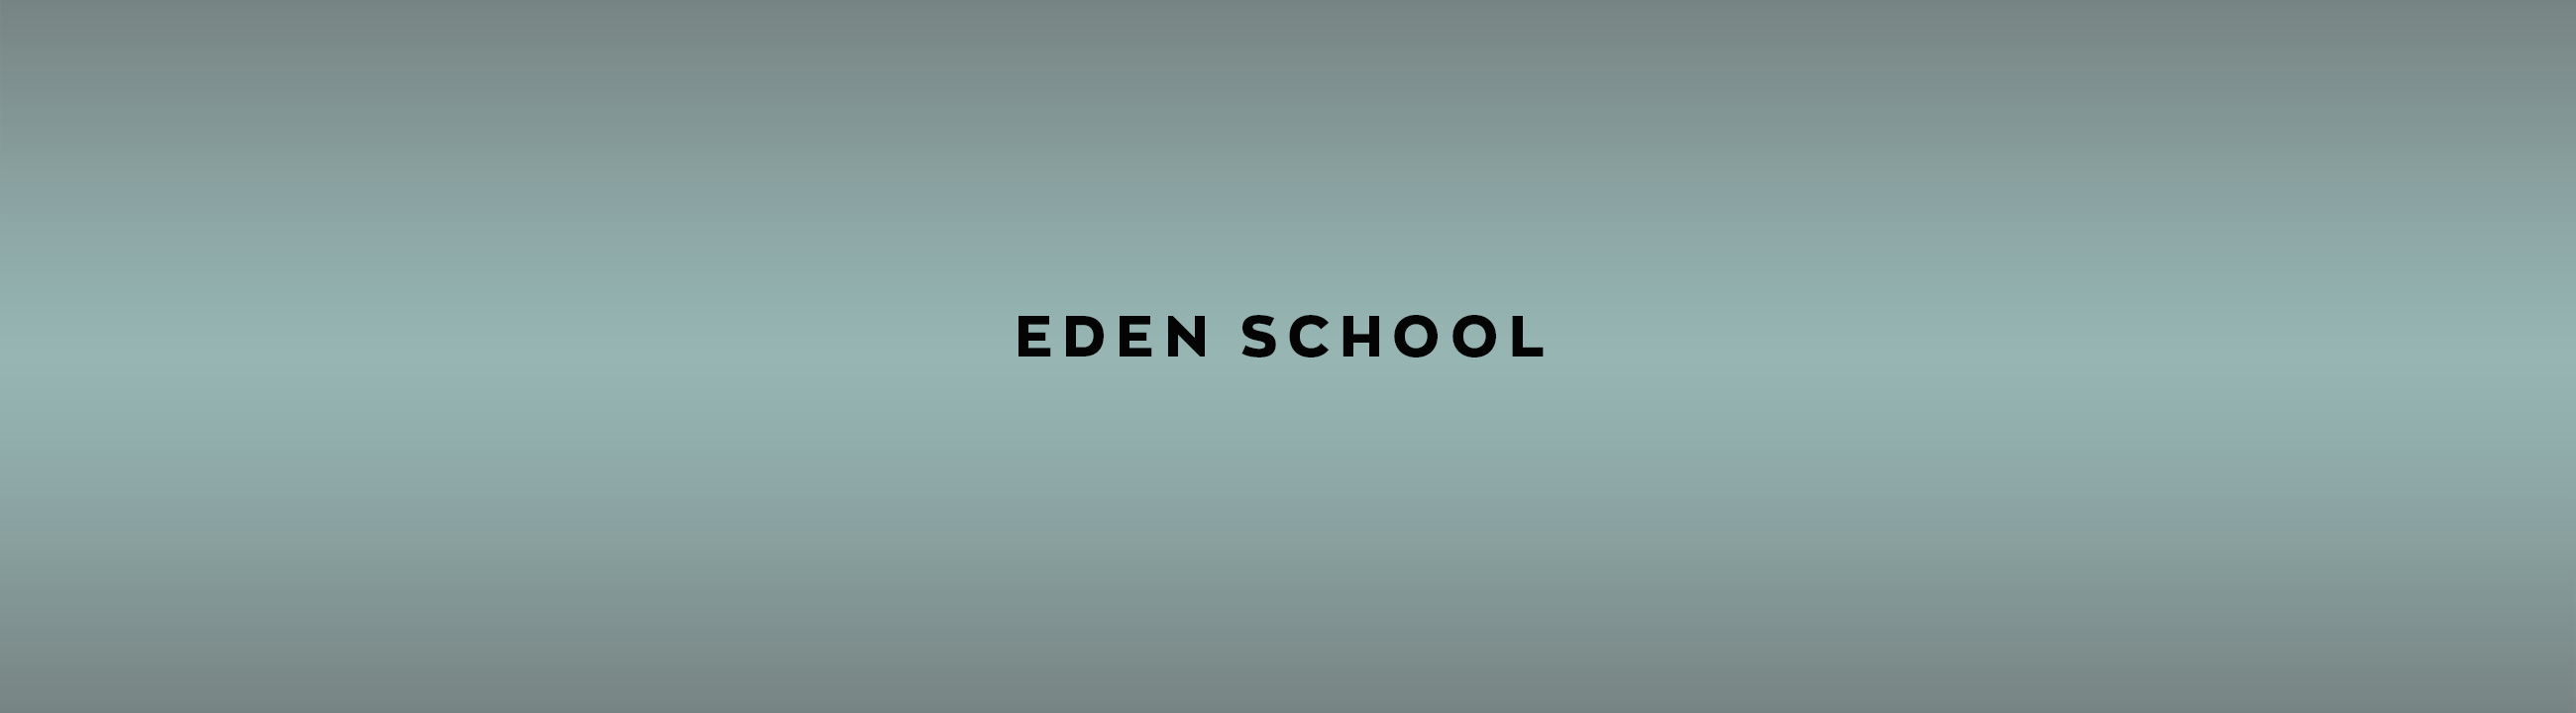 EDEN SCHOOL